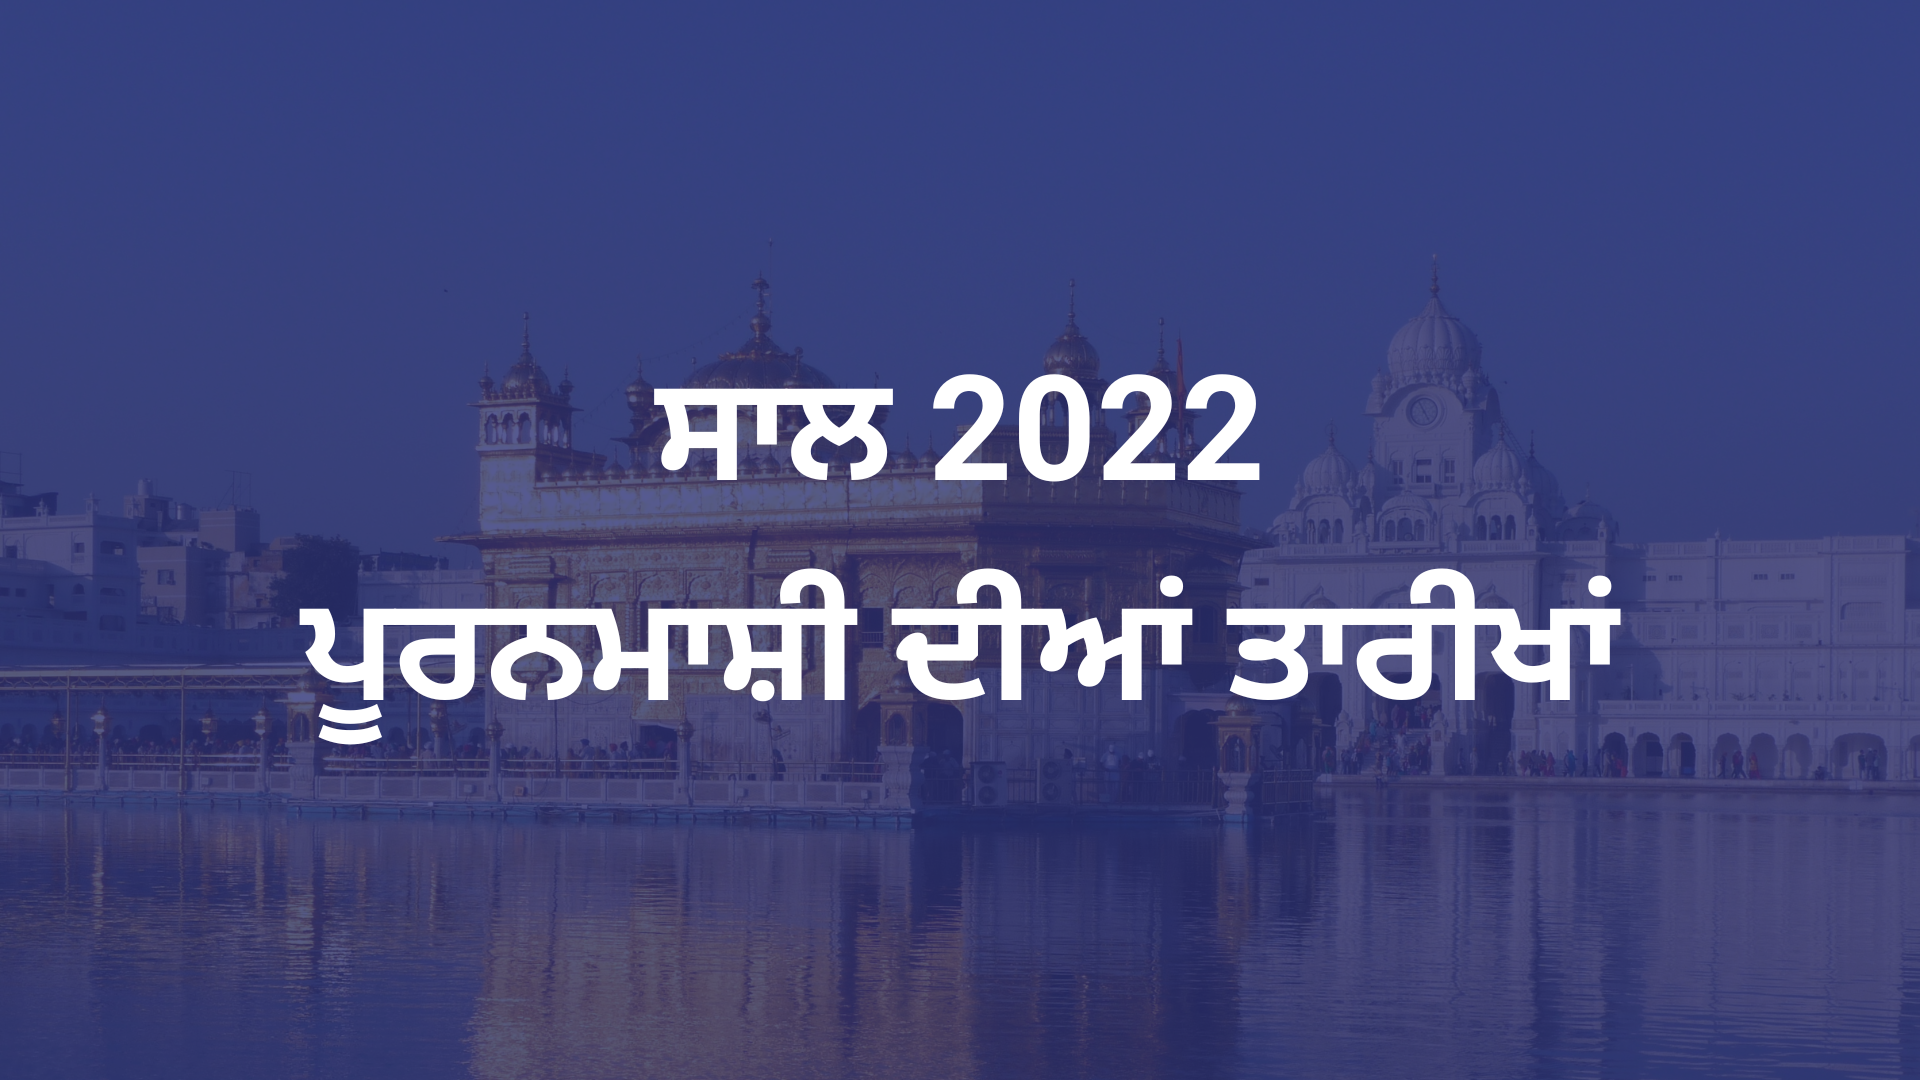 Puranmashi Dates 2022